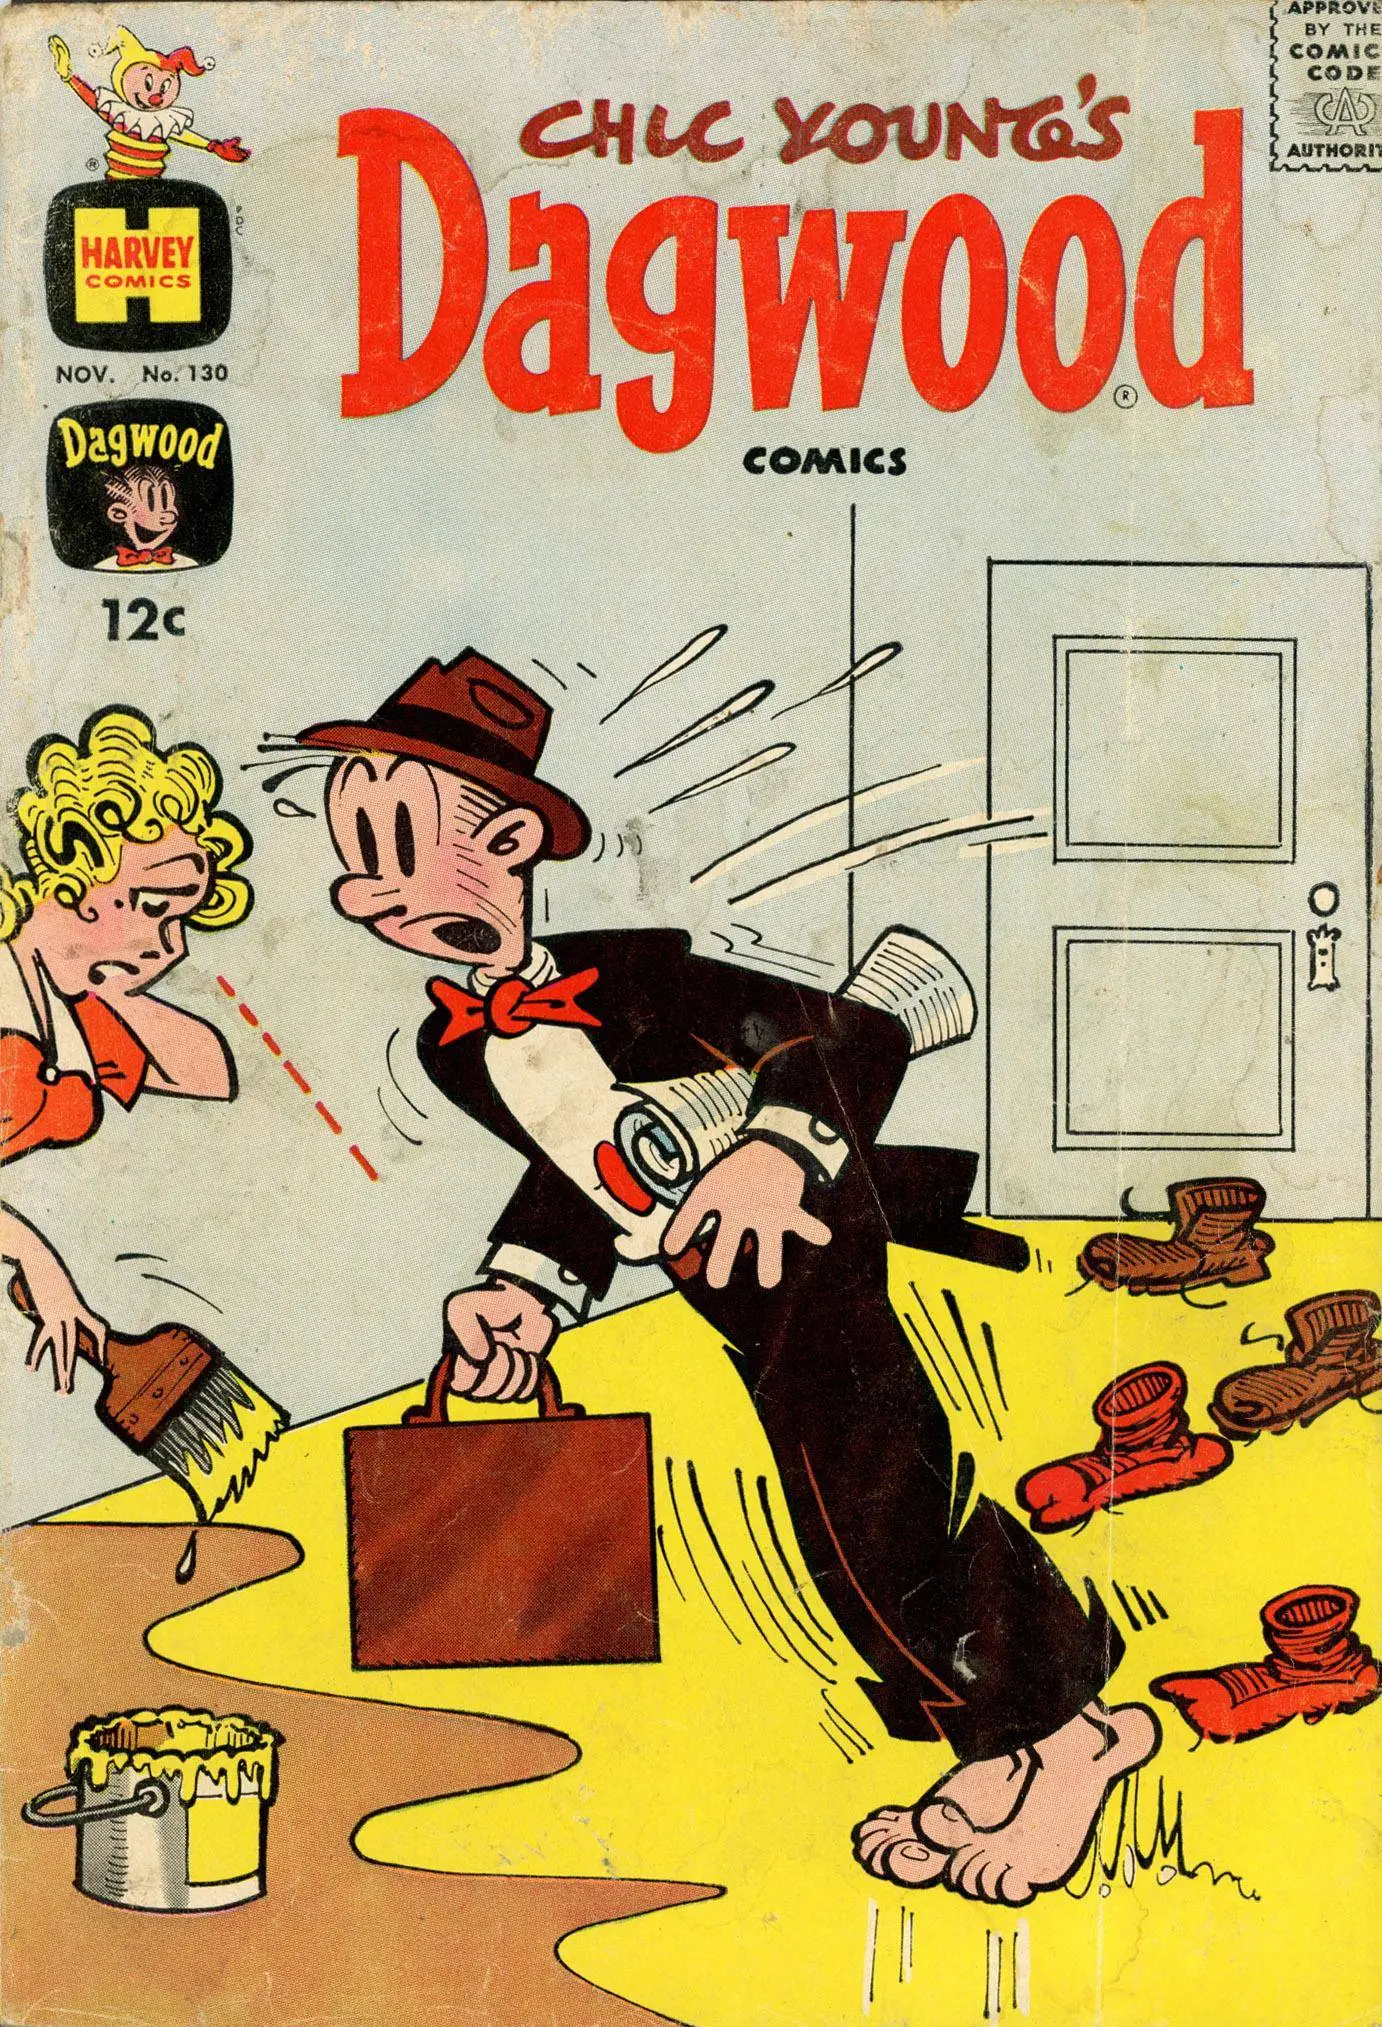 Dagwood comics